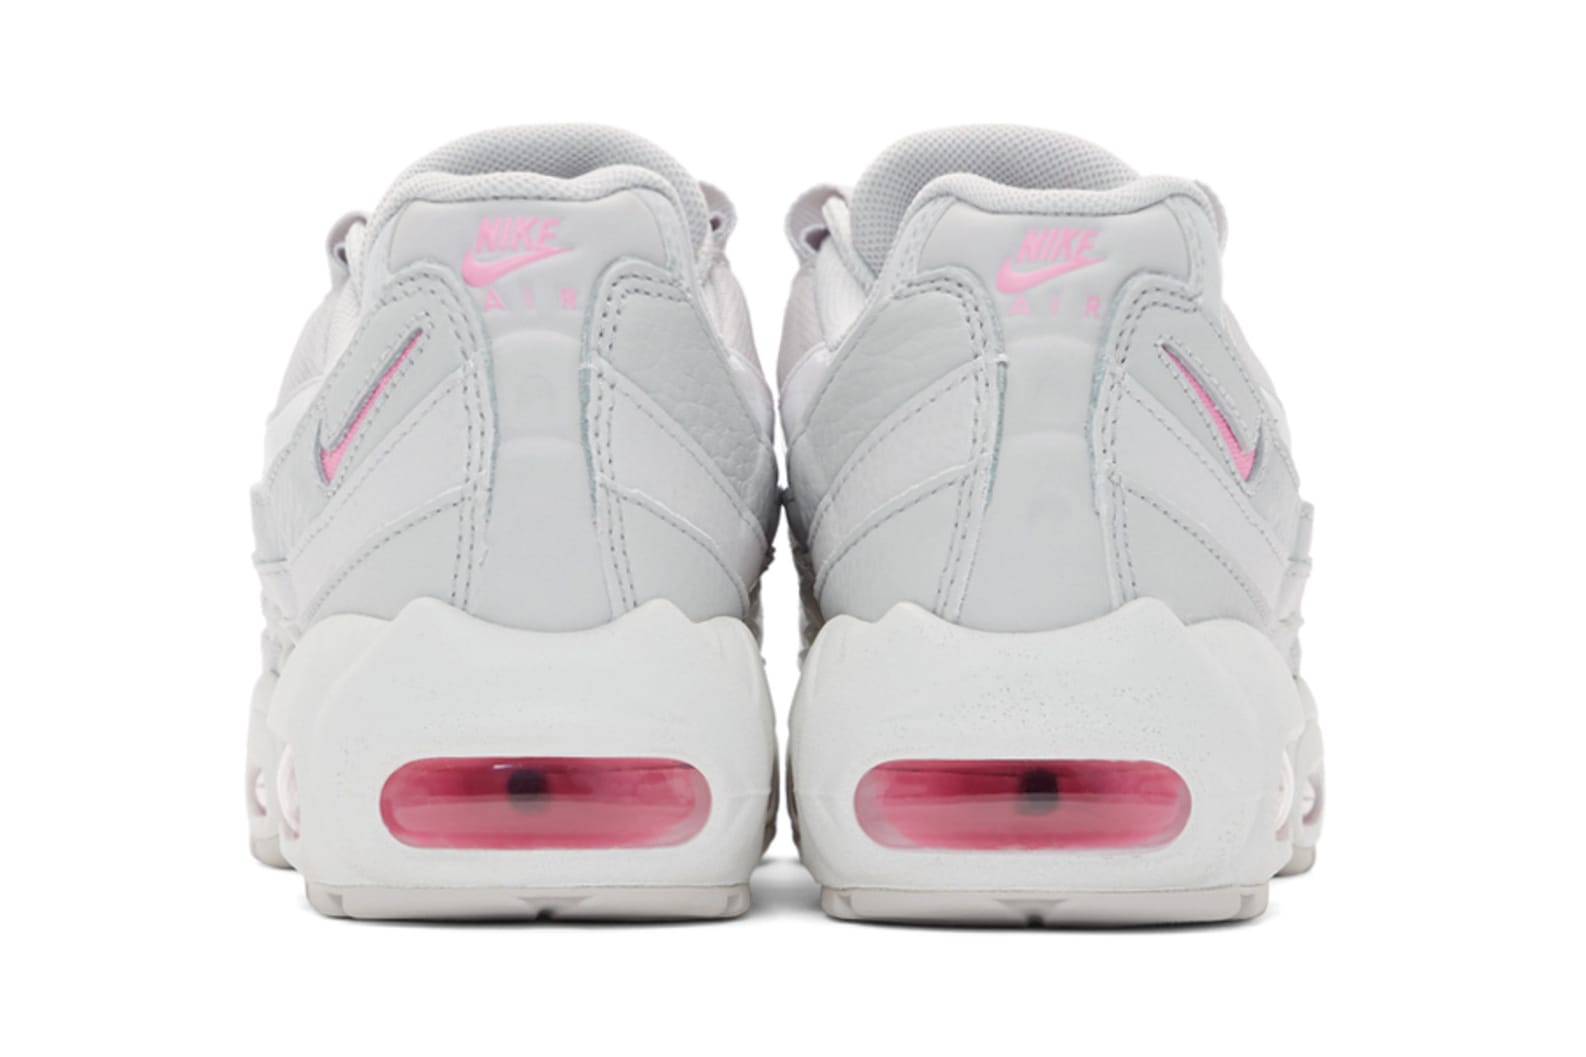 gray and pink air max 95